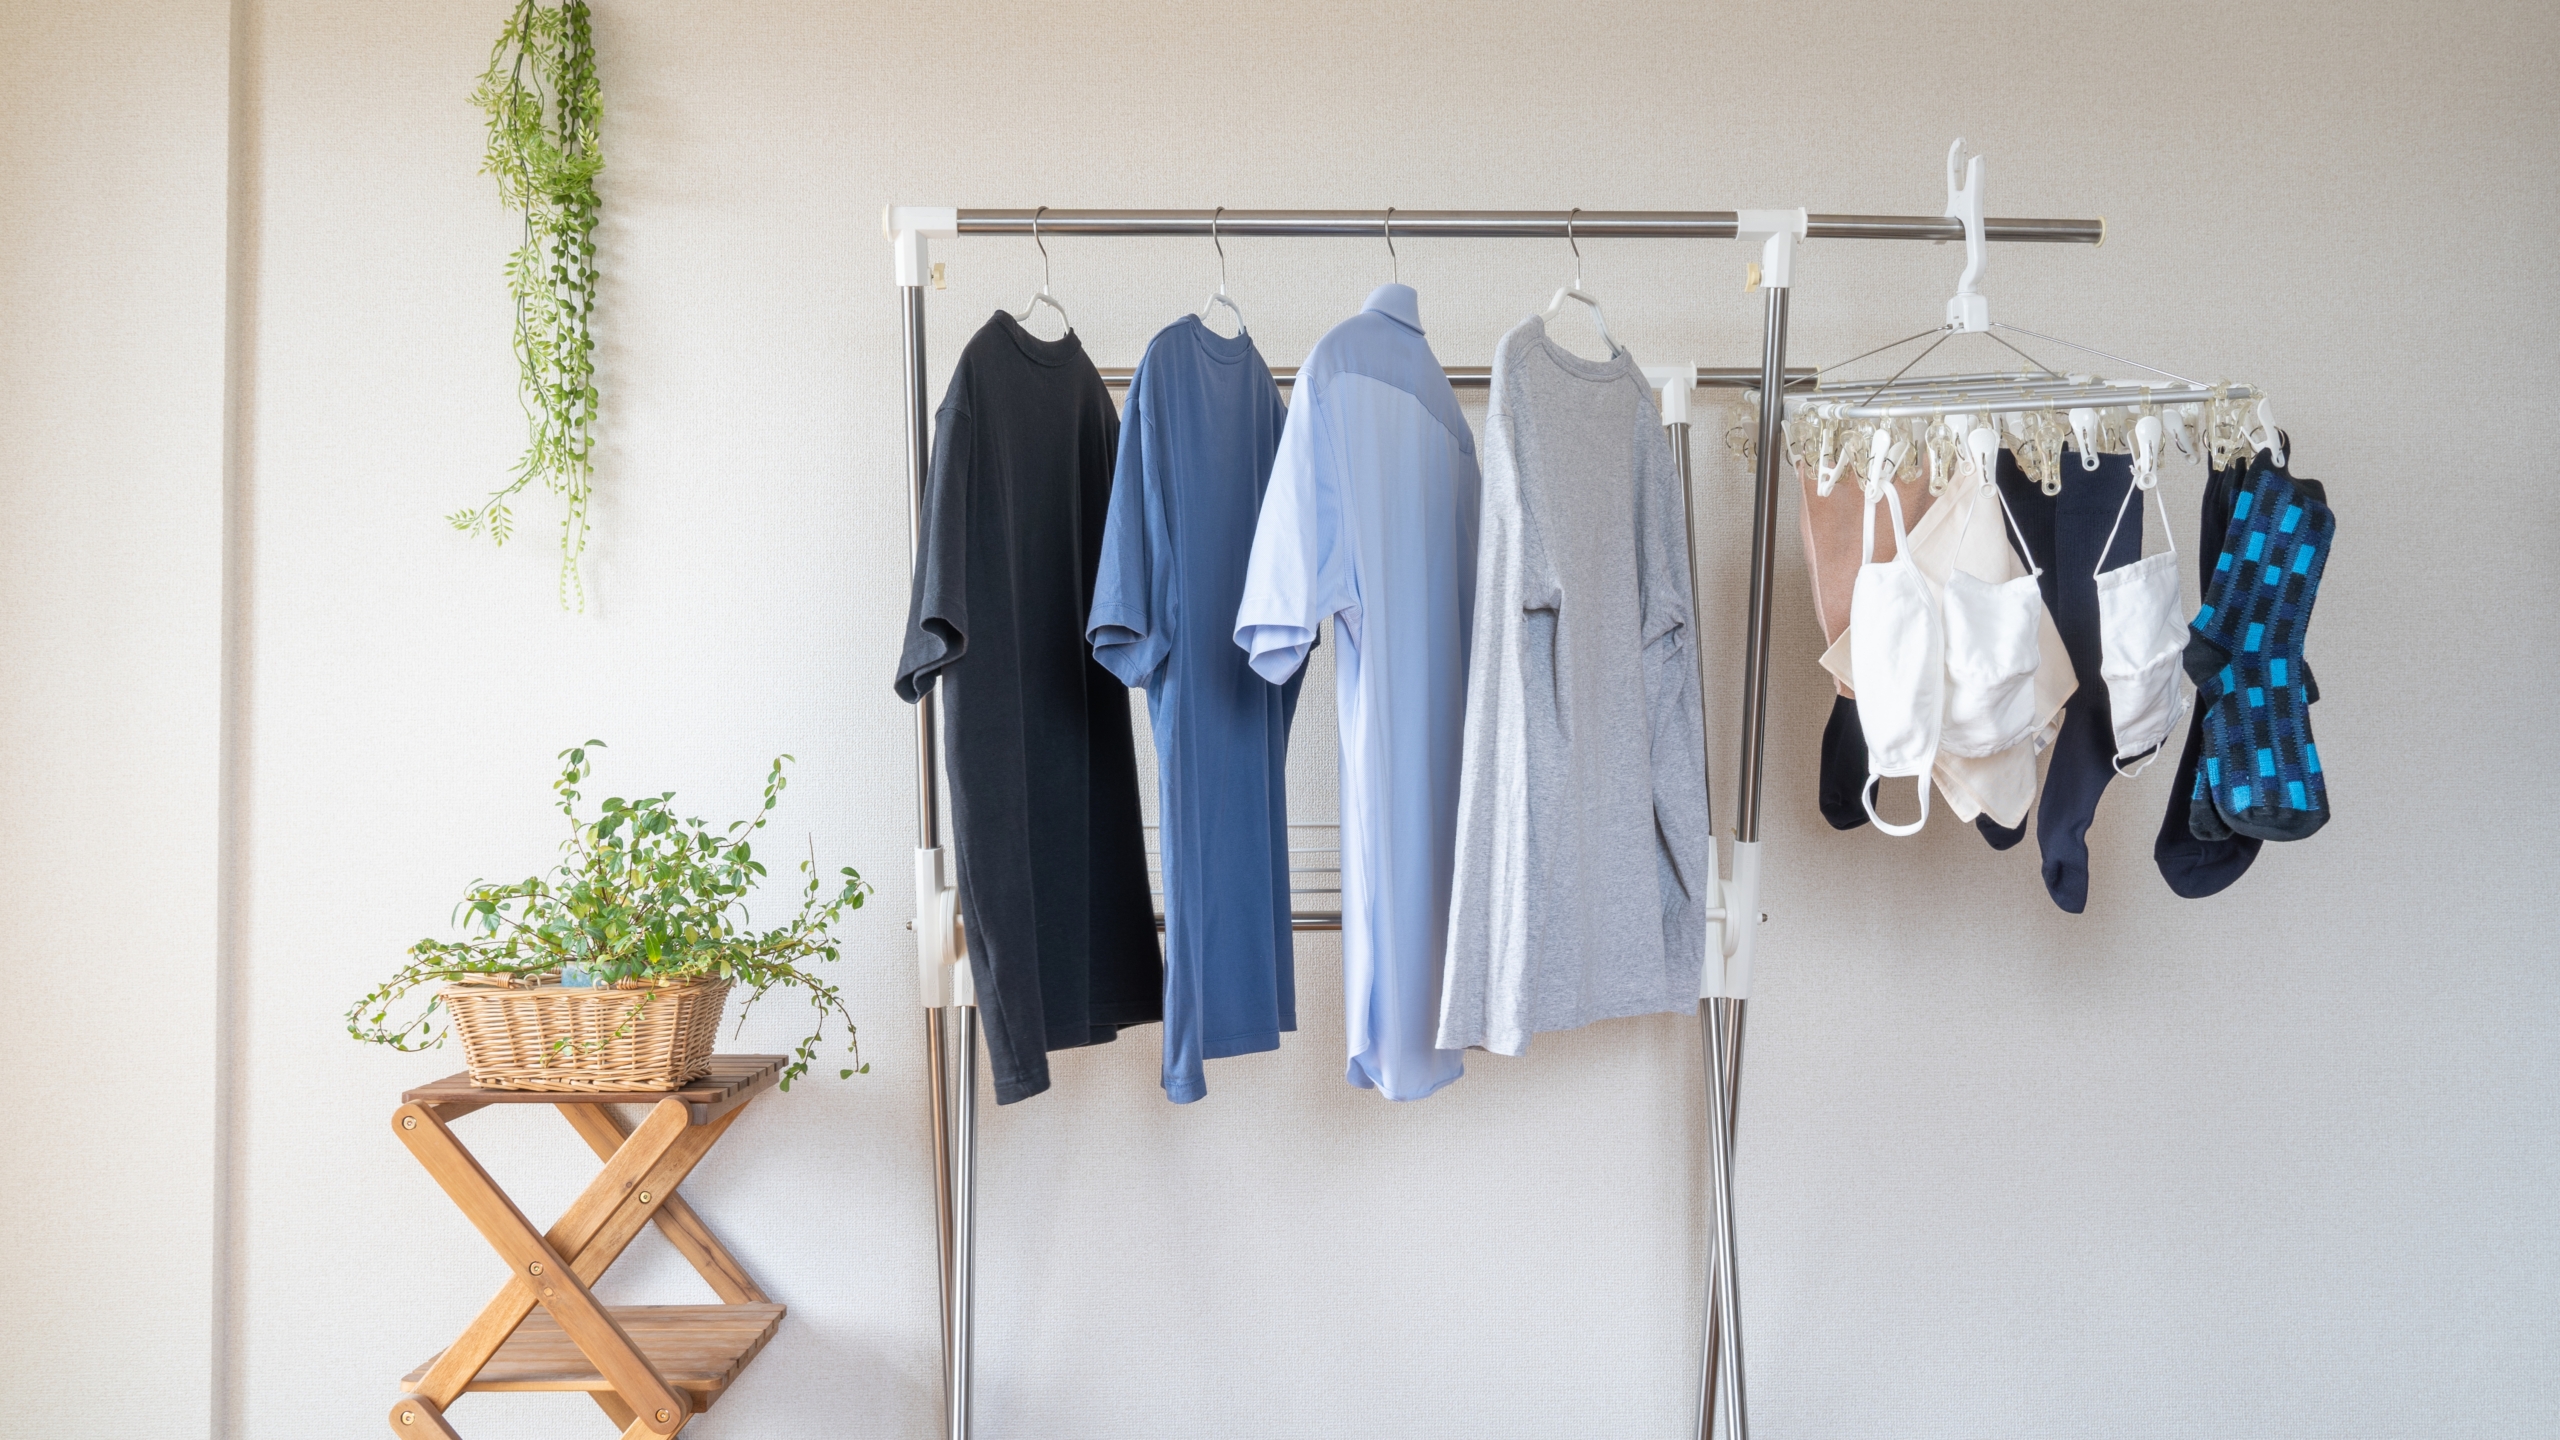 Khi phơi quần áo, nên trải quần áo ra để không khí lưu thông tự do giữa từng mảnh quần áo. (Ảnh: Shutterstock)